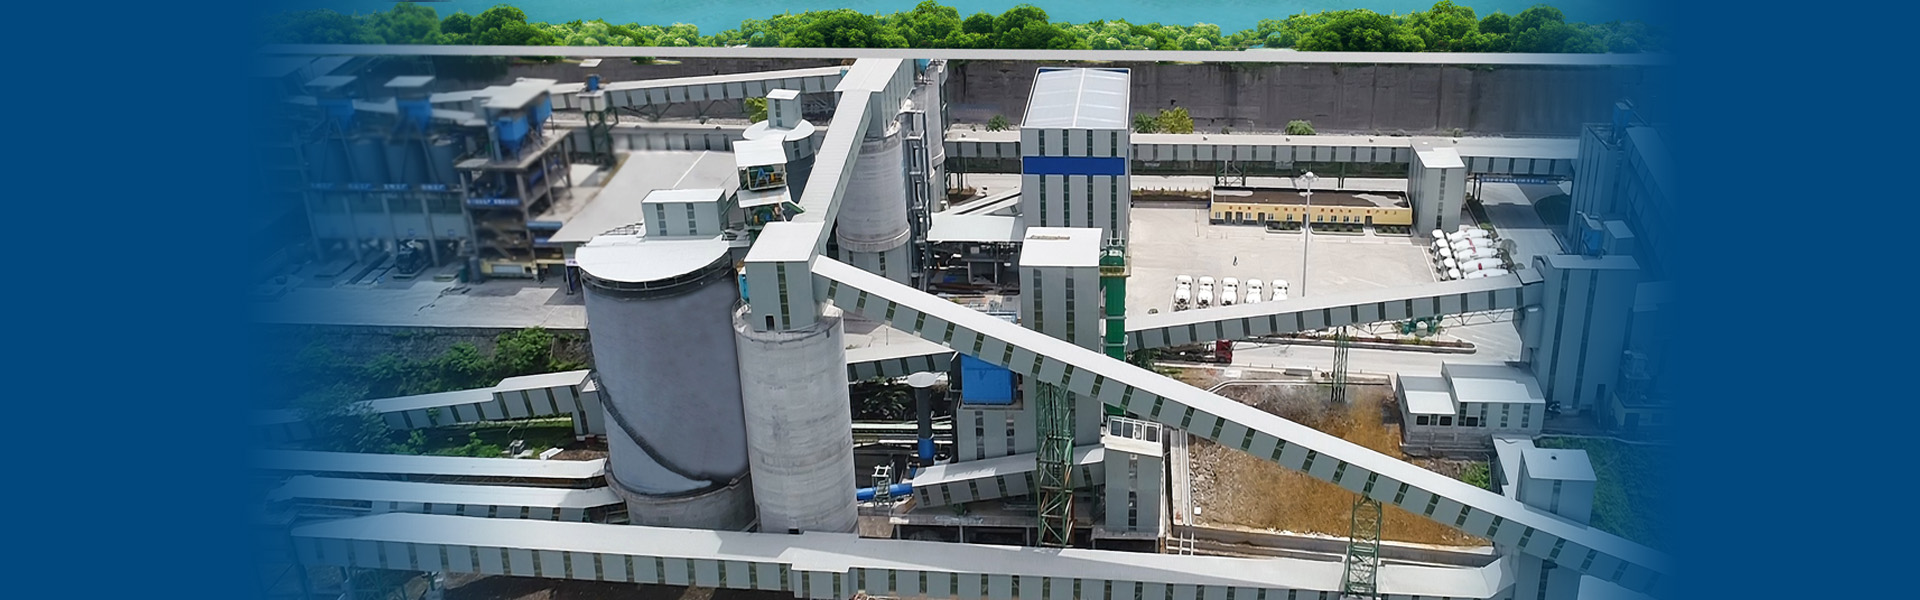 東方希望年產500萬噸精品樓站式機制砂生產工廠